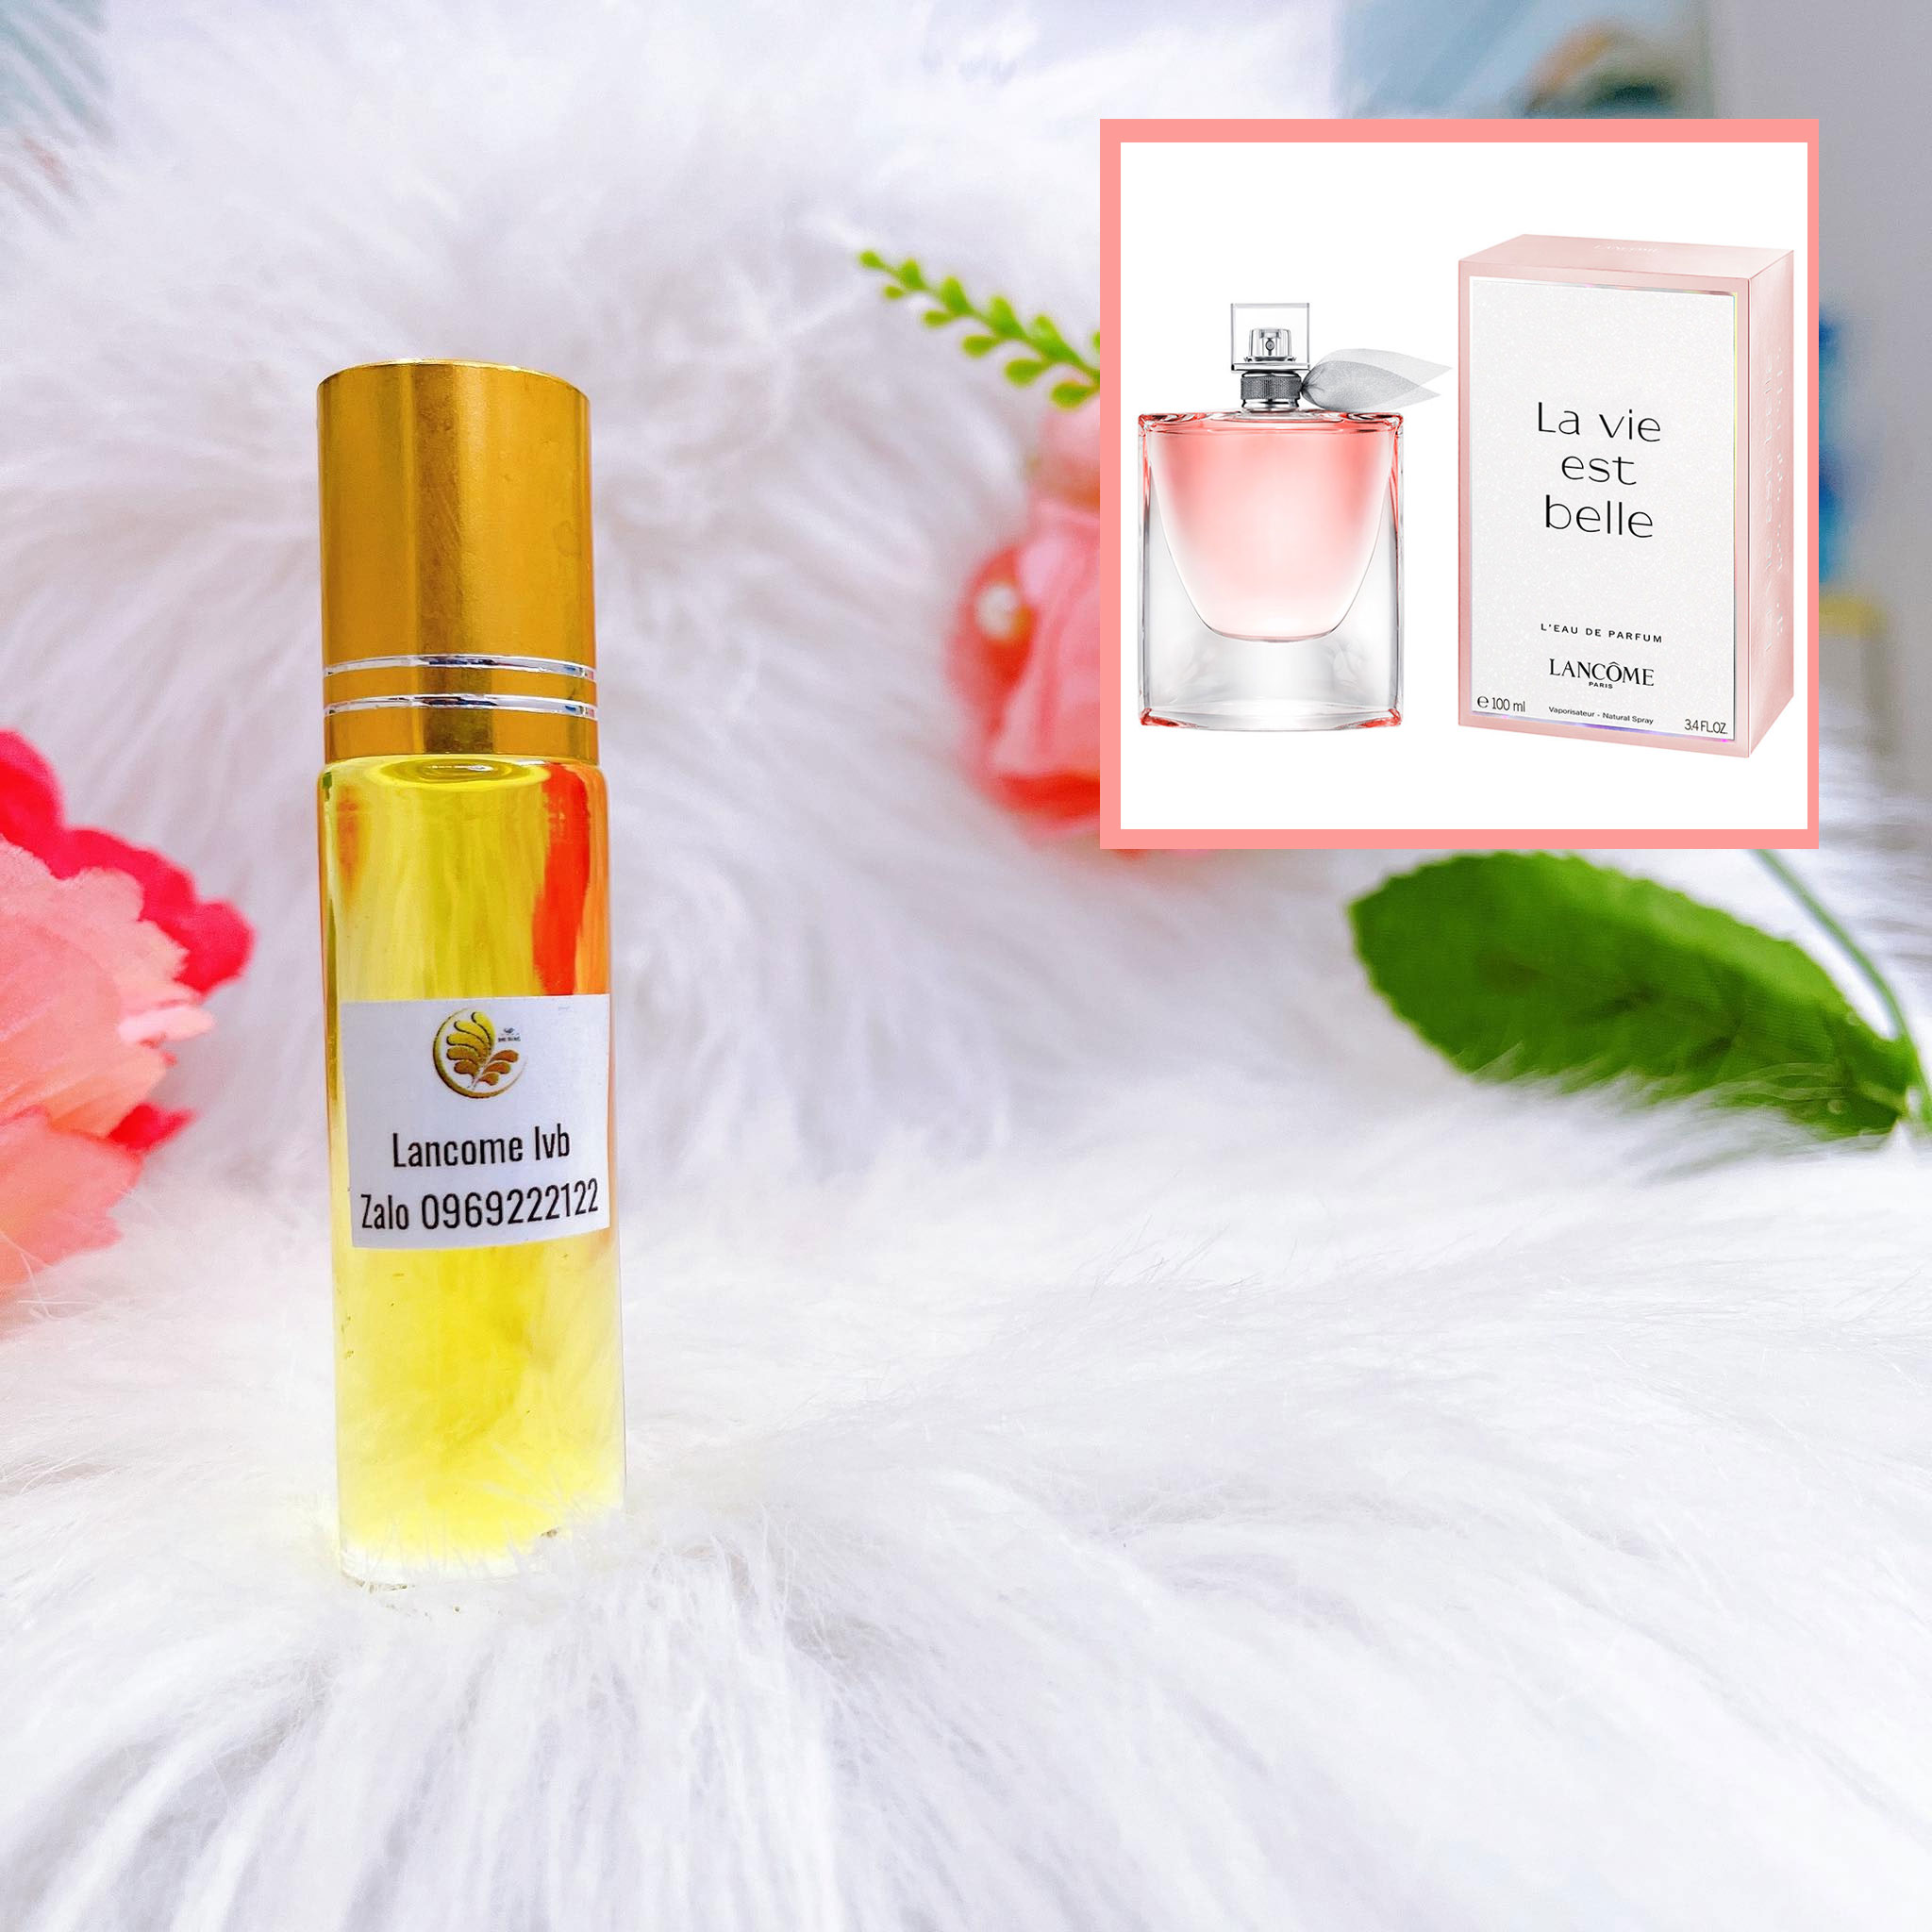 Tinh dầu nước hoa Dubai chiết dạng lăn mùi Lancome Lvb 10ml | MP Dubai Chuyên Tinh Dầu Nước Hoa Dubai